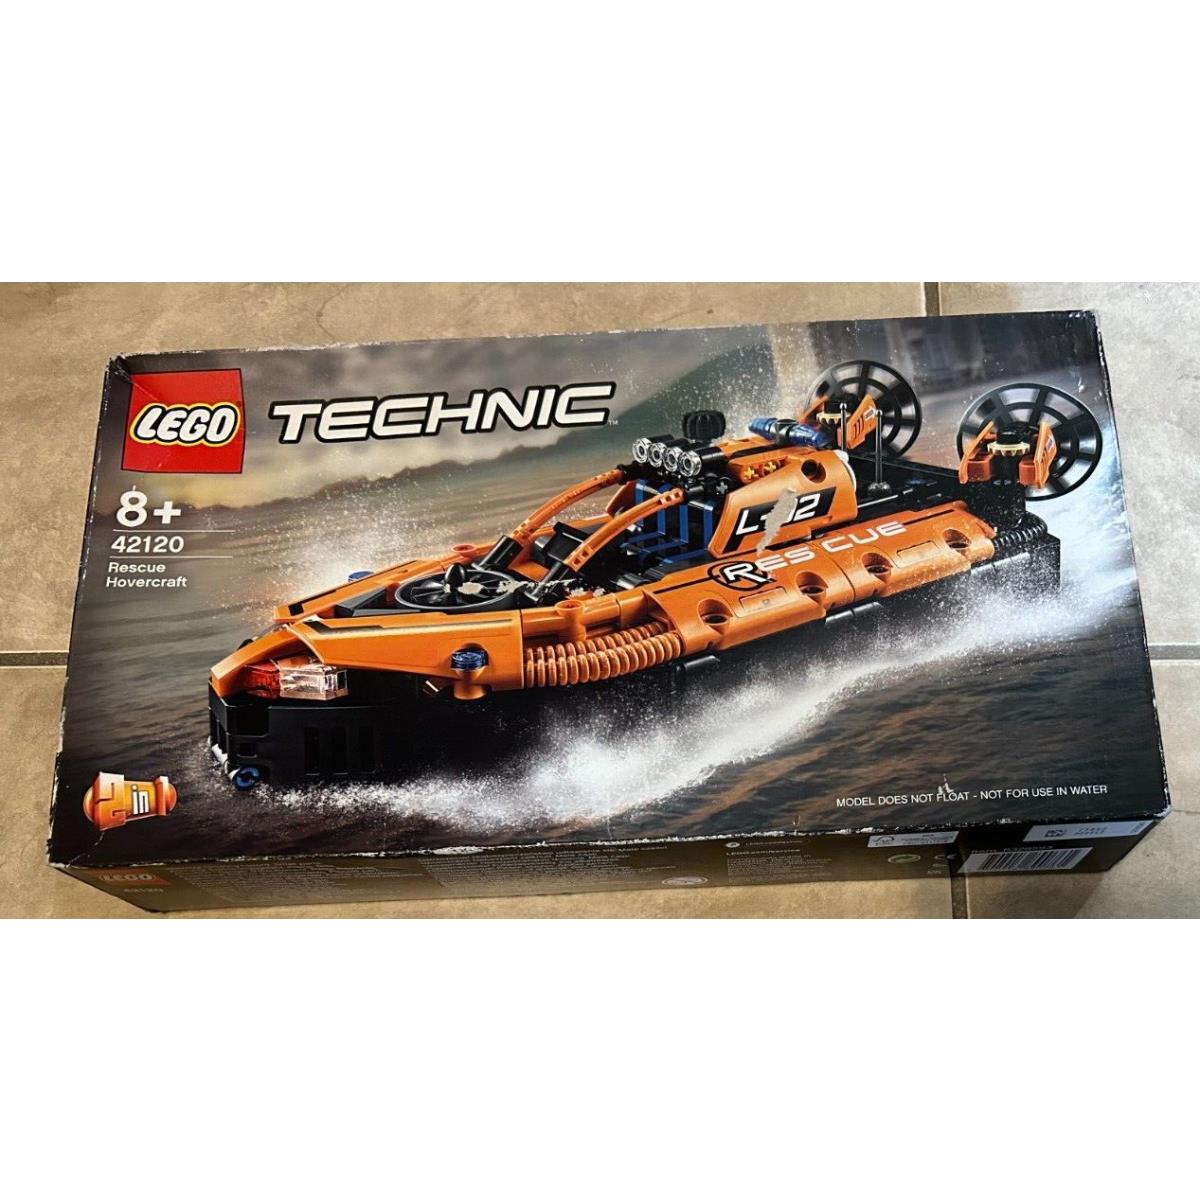 Lego Technic Rescue Hovercraft Motor Boat 42120 Set